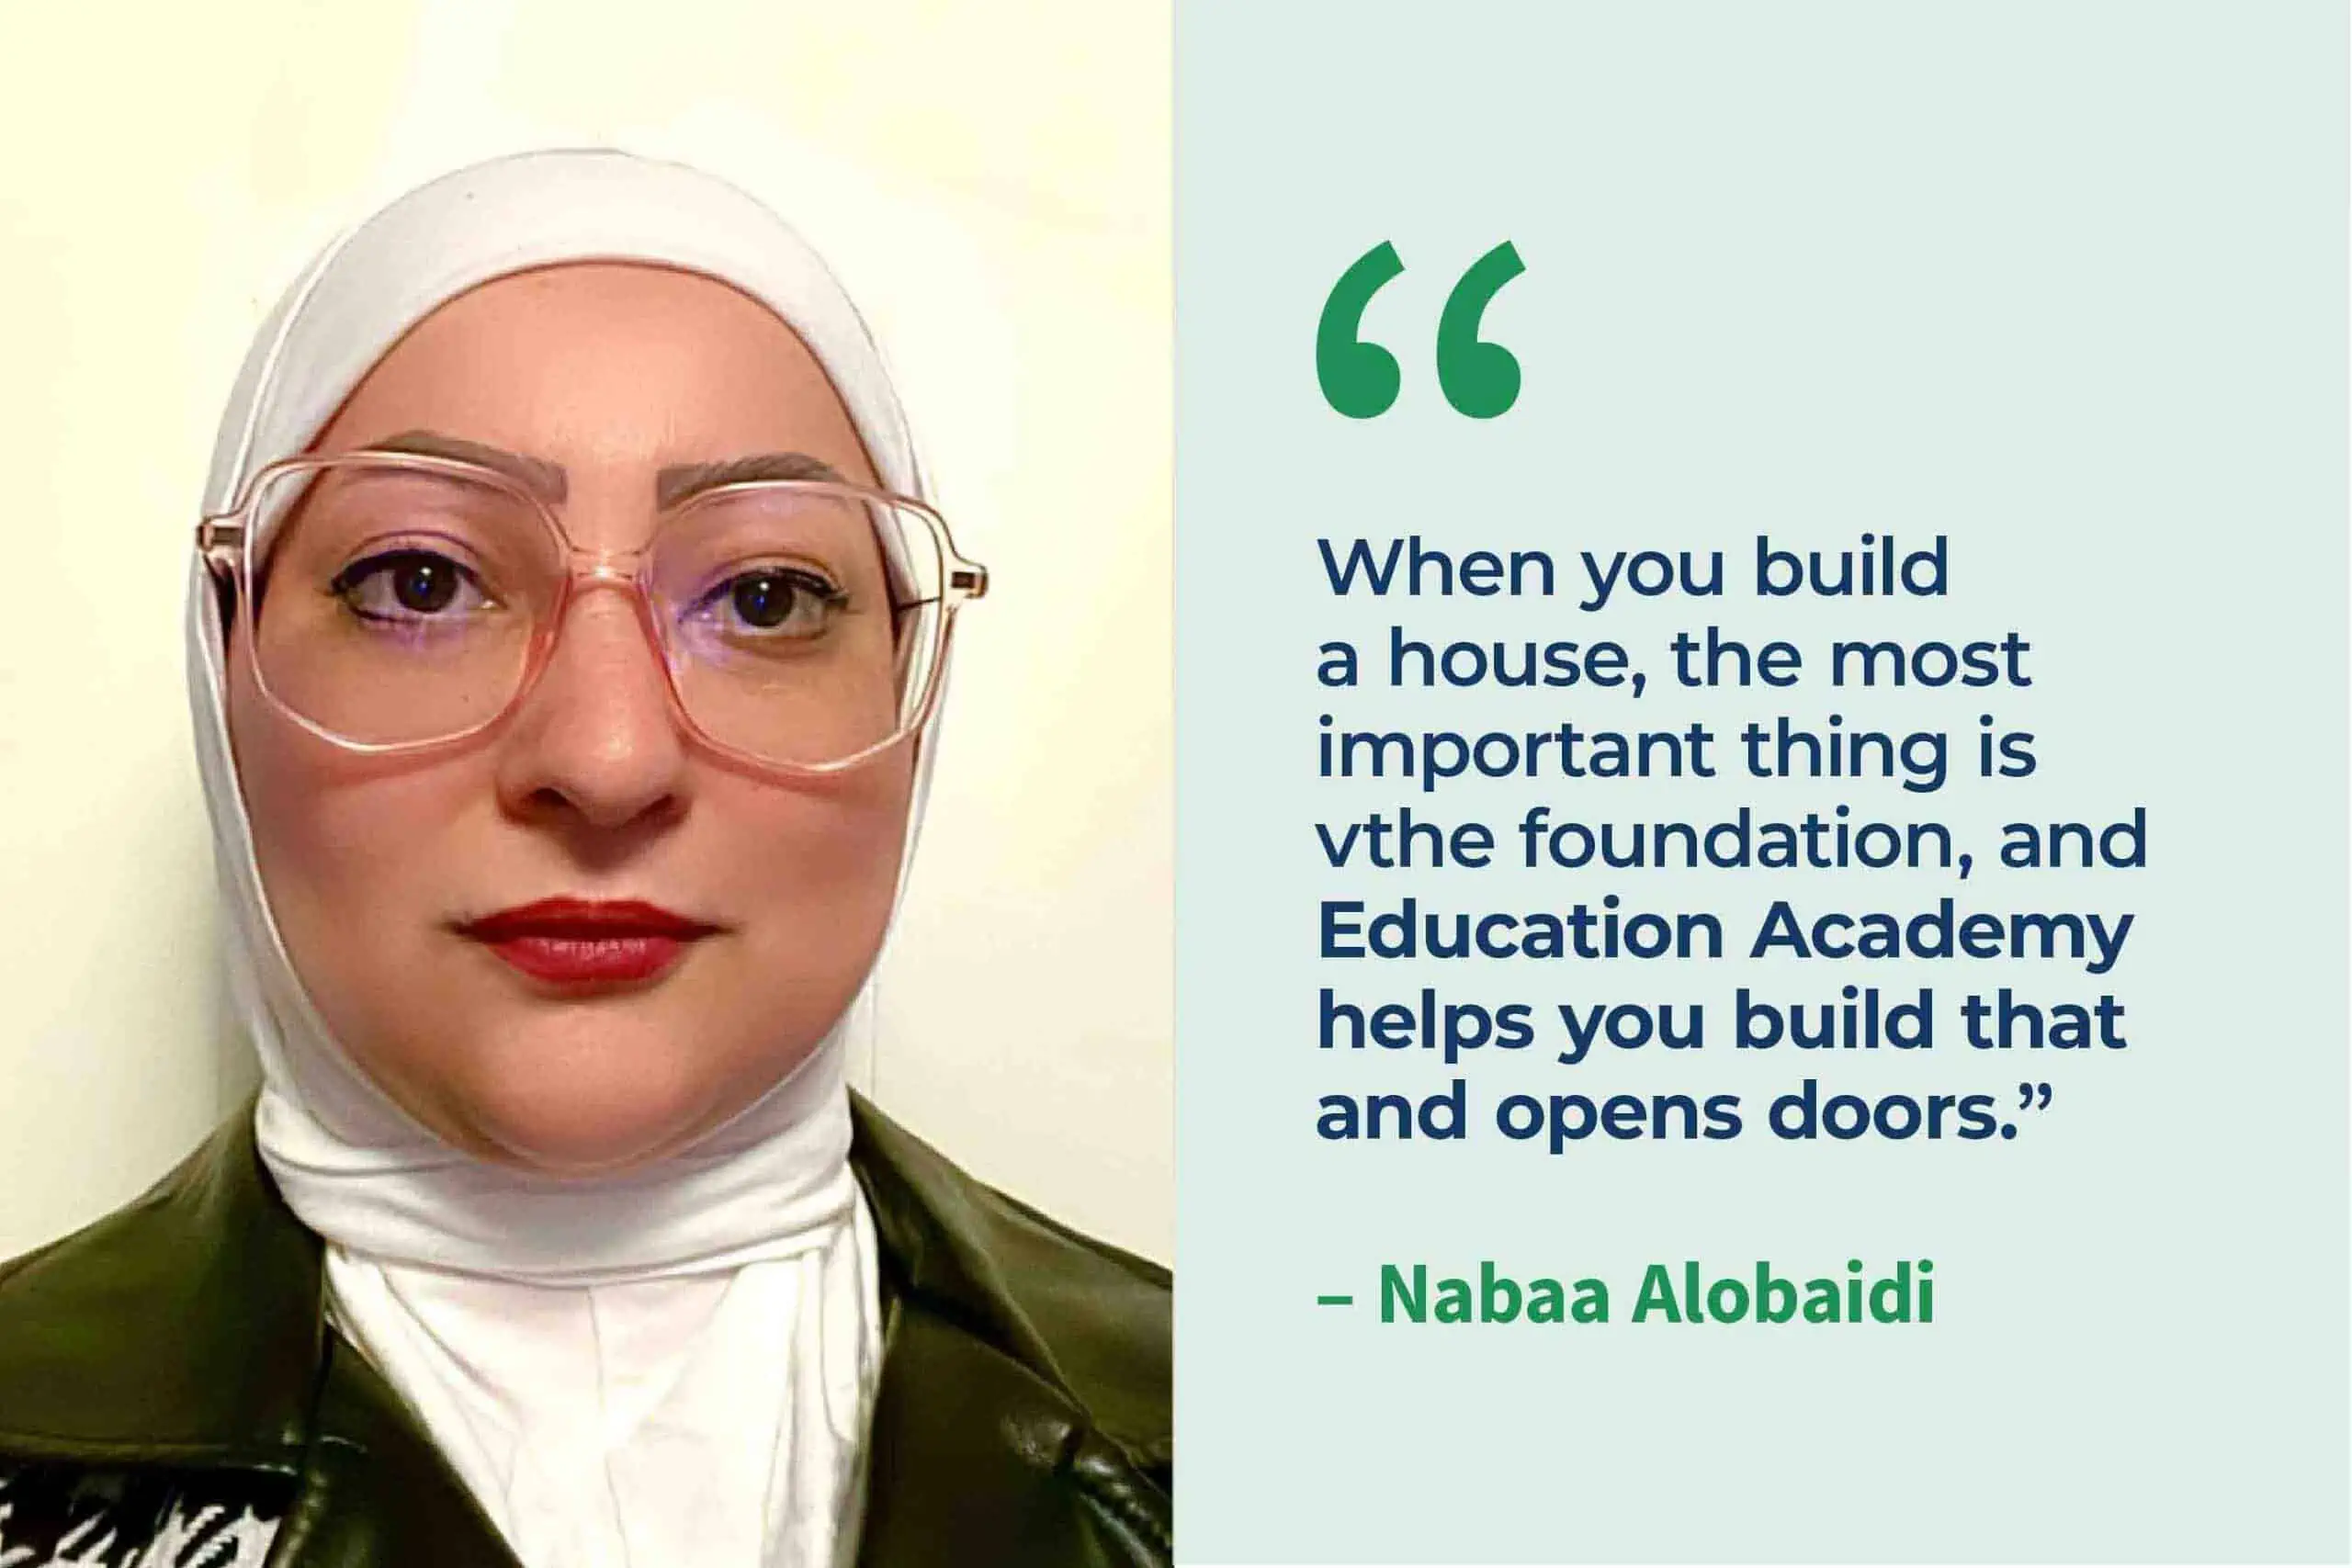 Headshot of Nabaa Alobaidi and quote